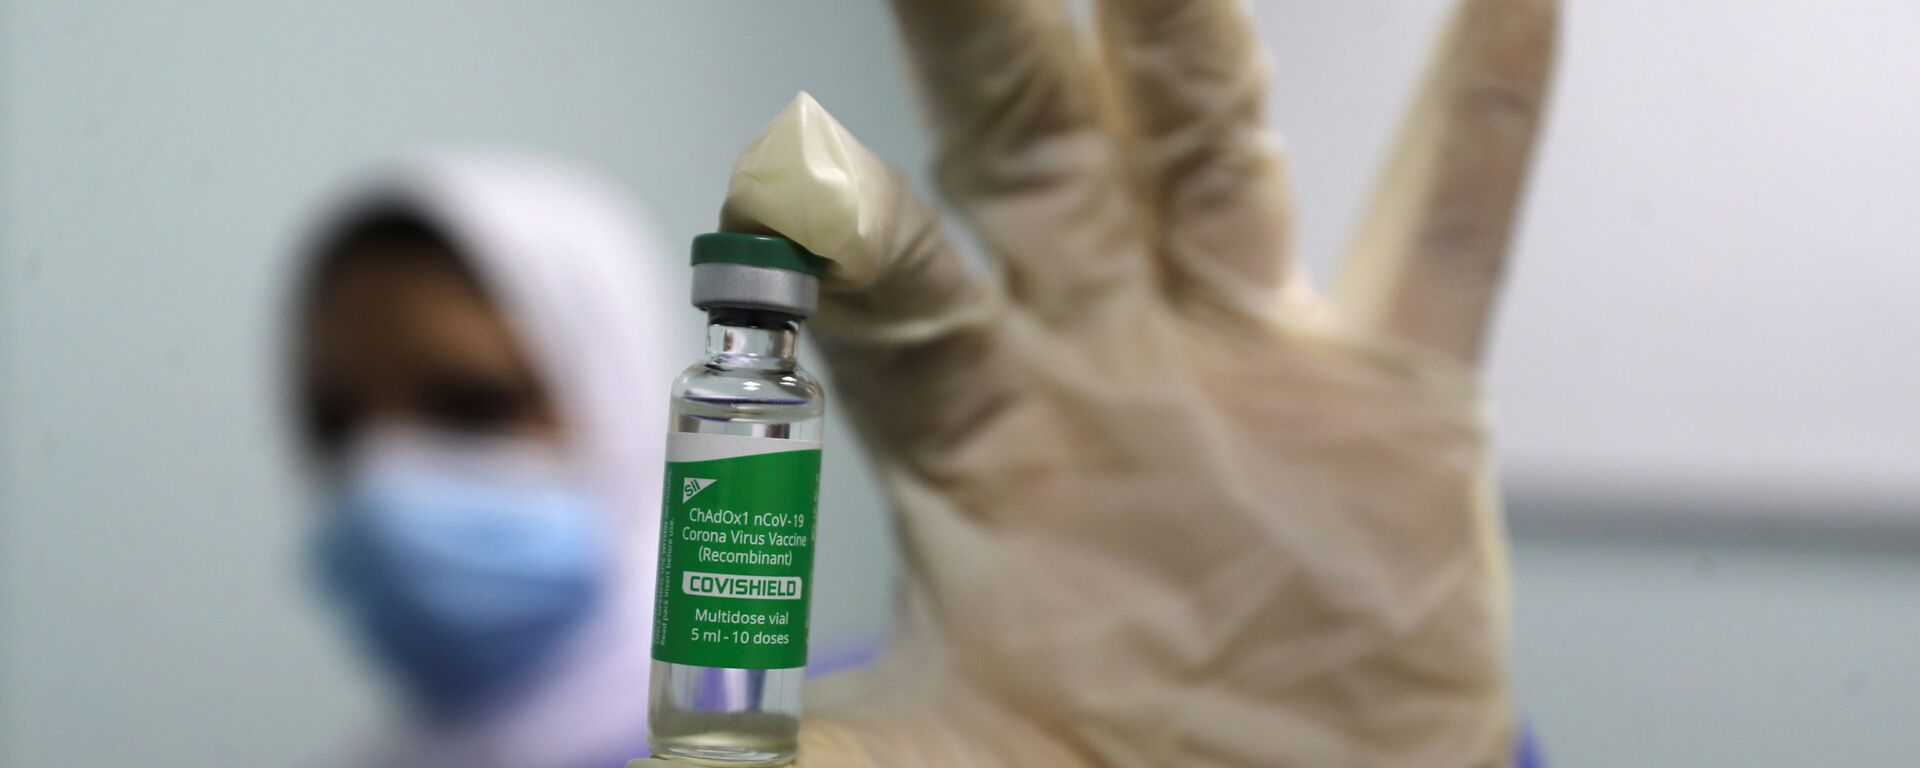 بدء تطعيم واسع النطاق في مصر ضد فيروس كورونا (كوفيد-19)، القاهرة، 4 مارس 2021 - سبوتنيك عربي, 1920, 10.11.2021